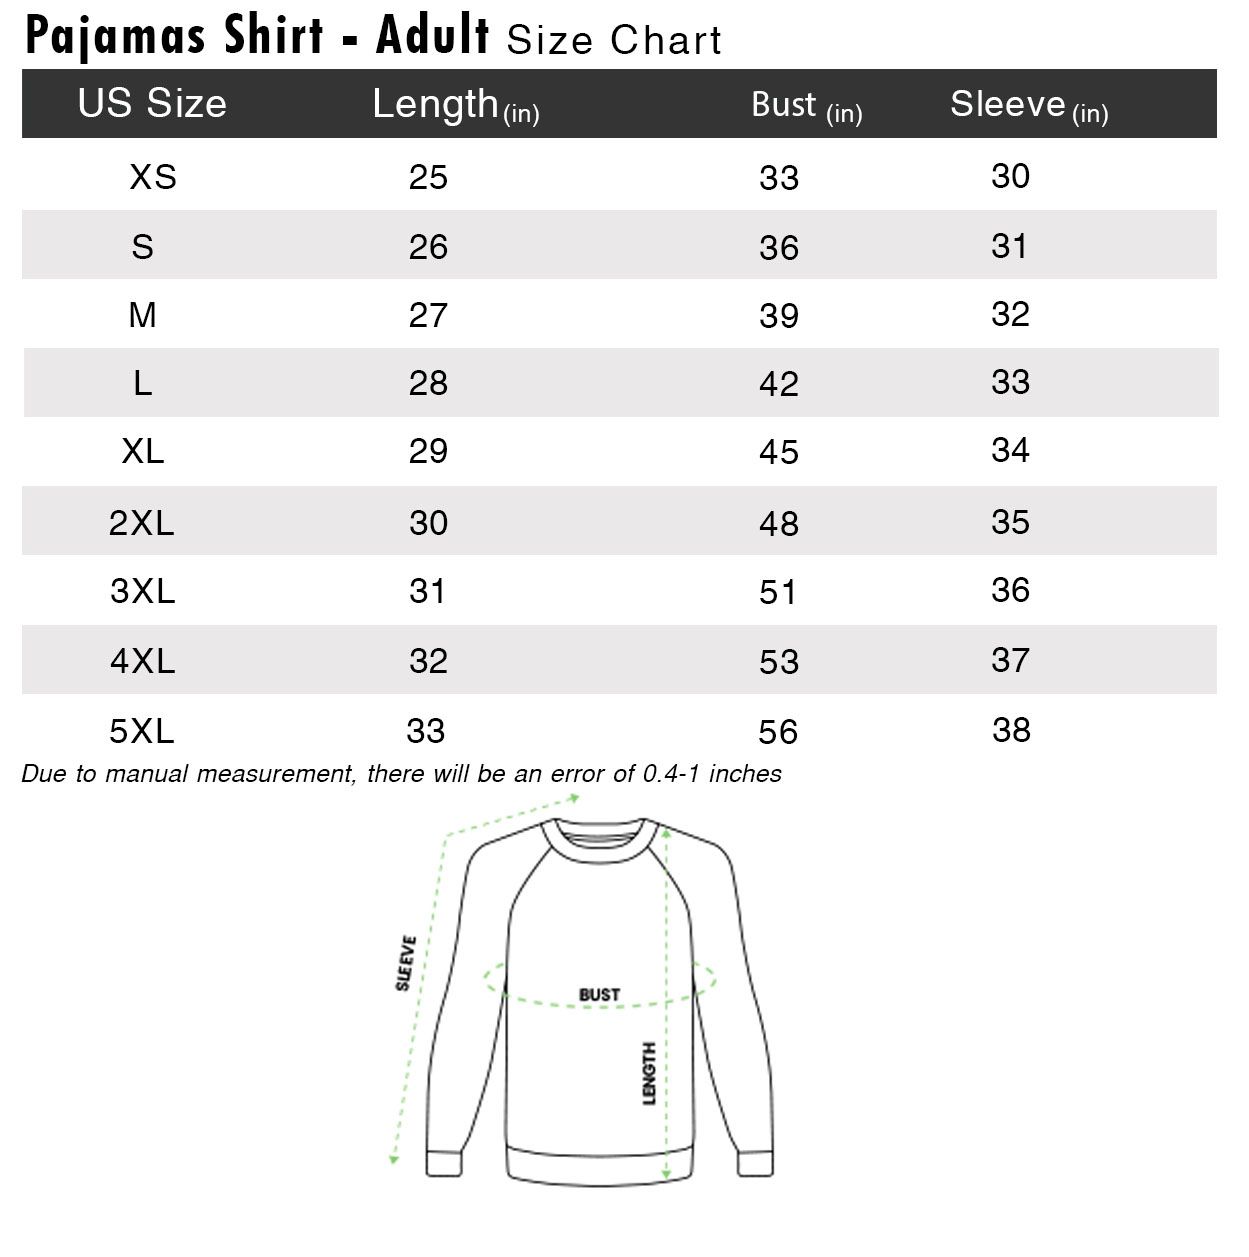 Pajamas shirt size chart